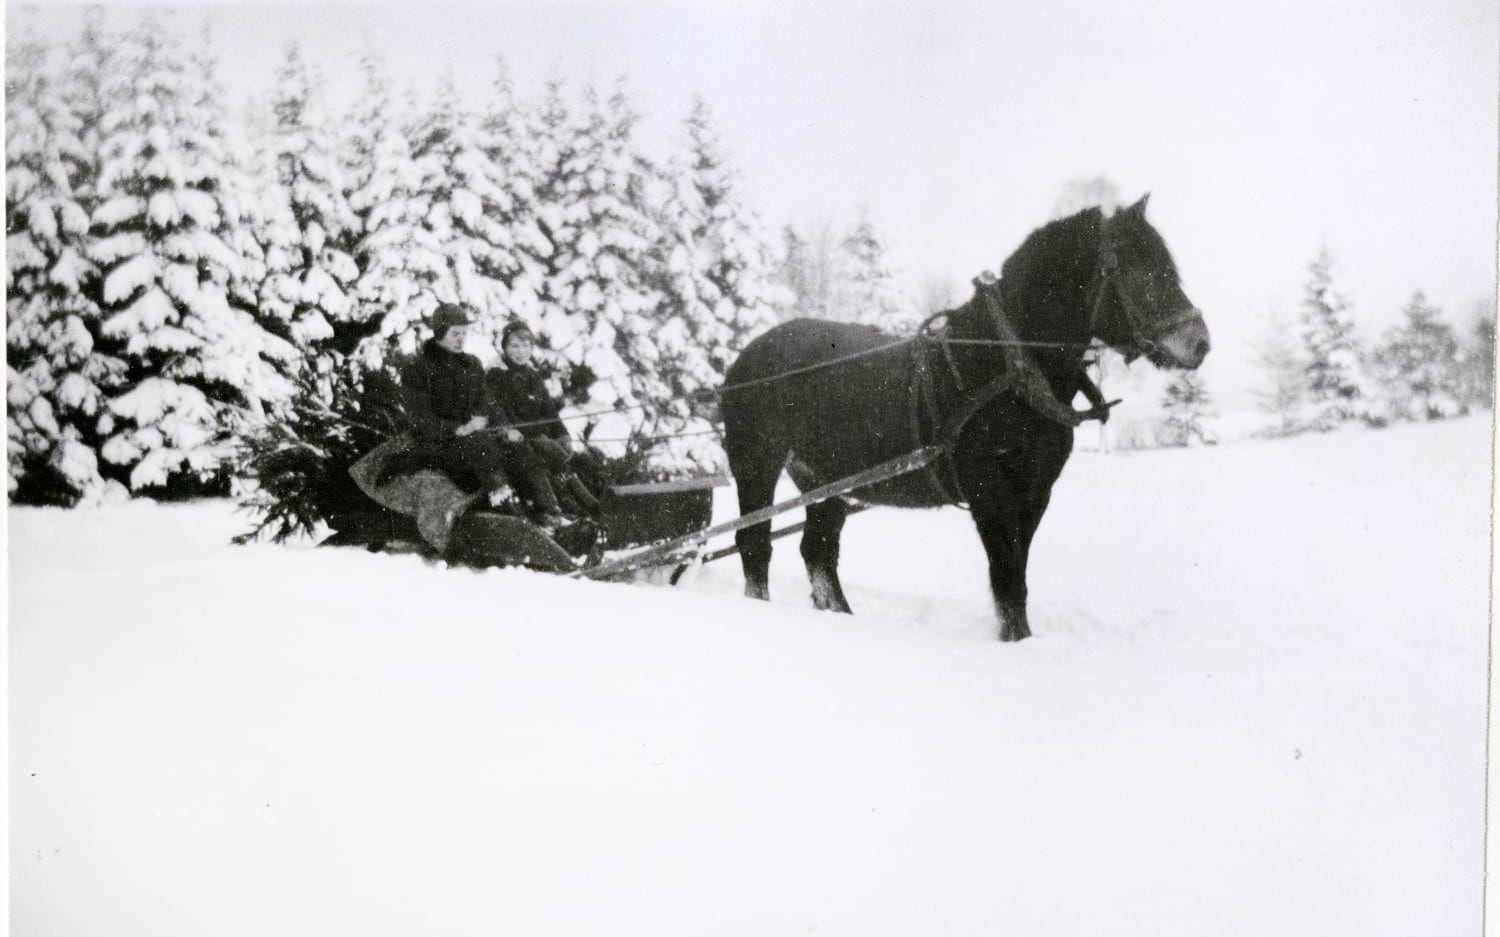 Julgranen hämtades dagen före julafton 1955 av folk från gården Toftekulla. Hästen Docka drog både de anställda och granen genom den djupa snön.